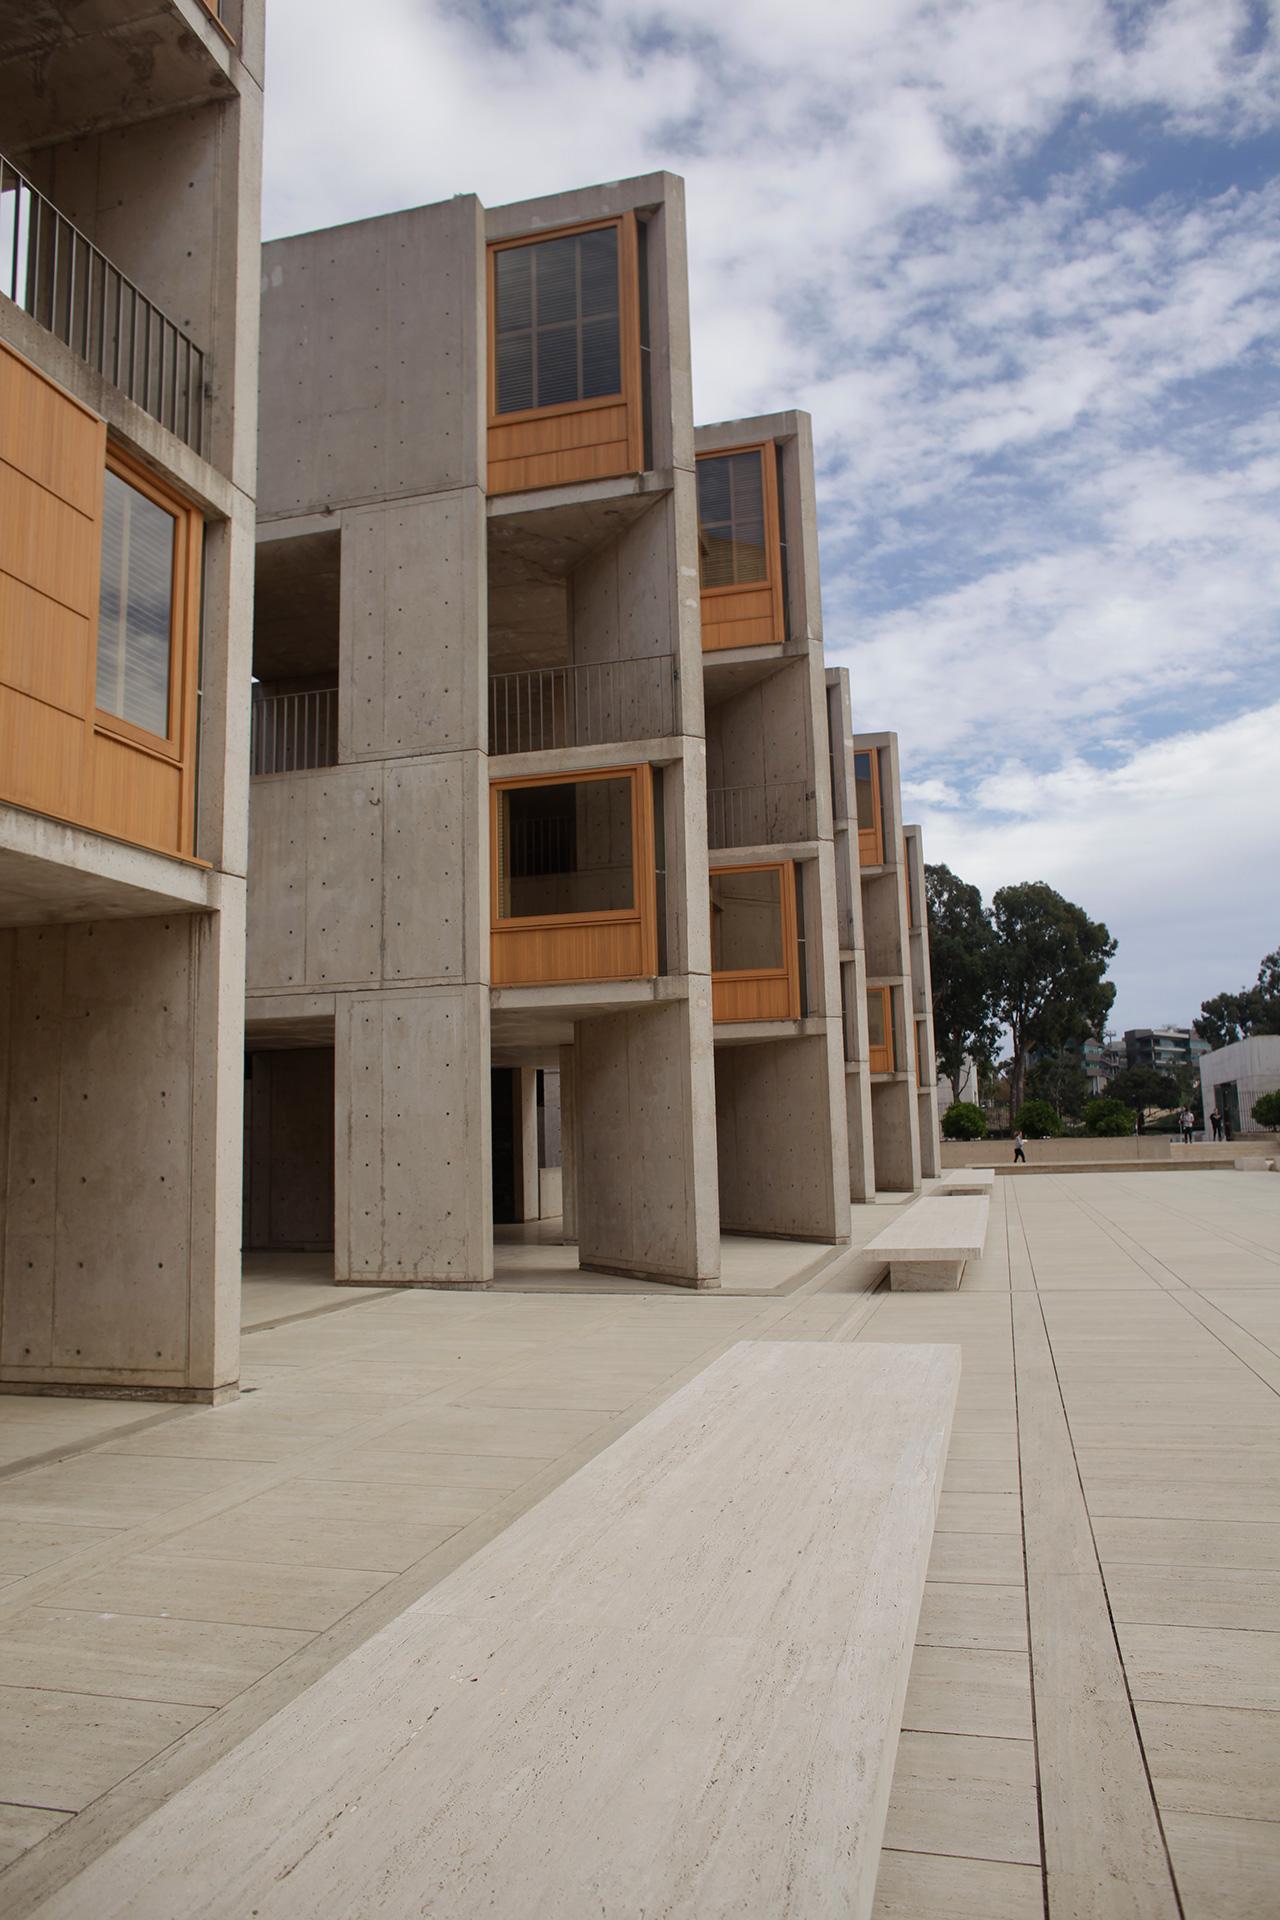 サンディエゴのルイス カーンによる名作建築 ソーク研究所 が彫刻のように美しい Oh My ブログ